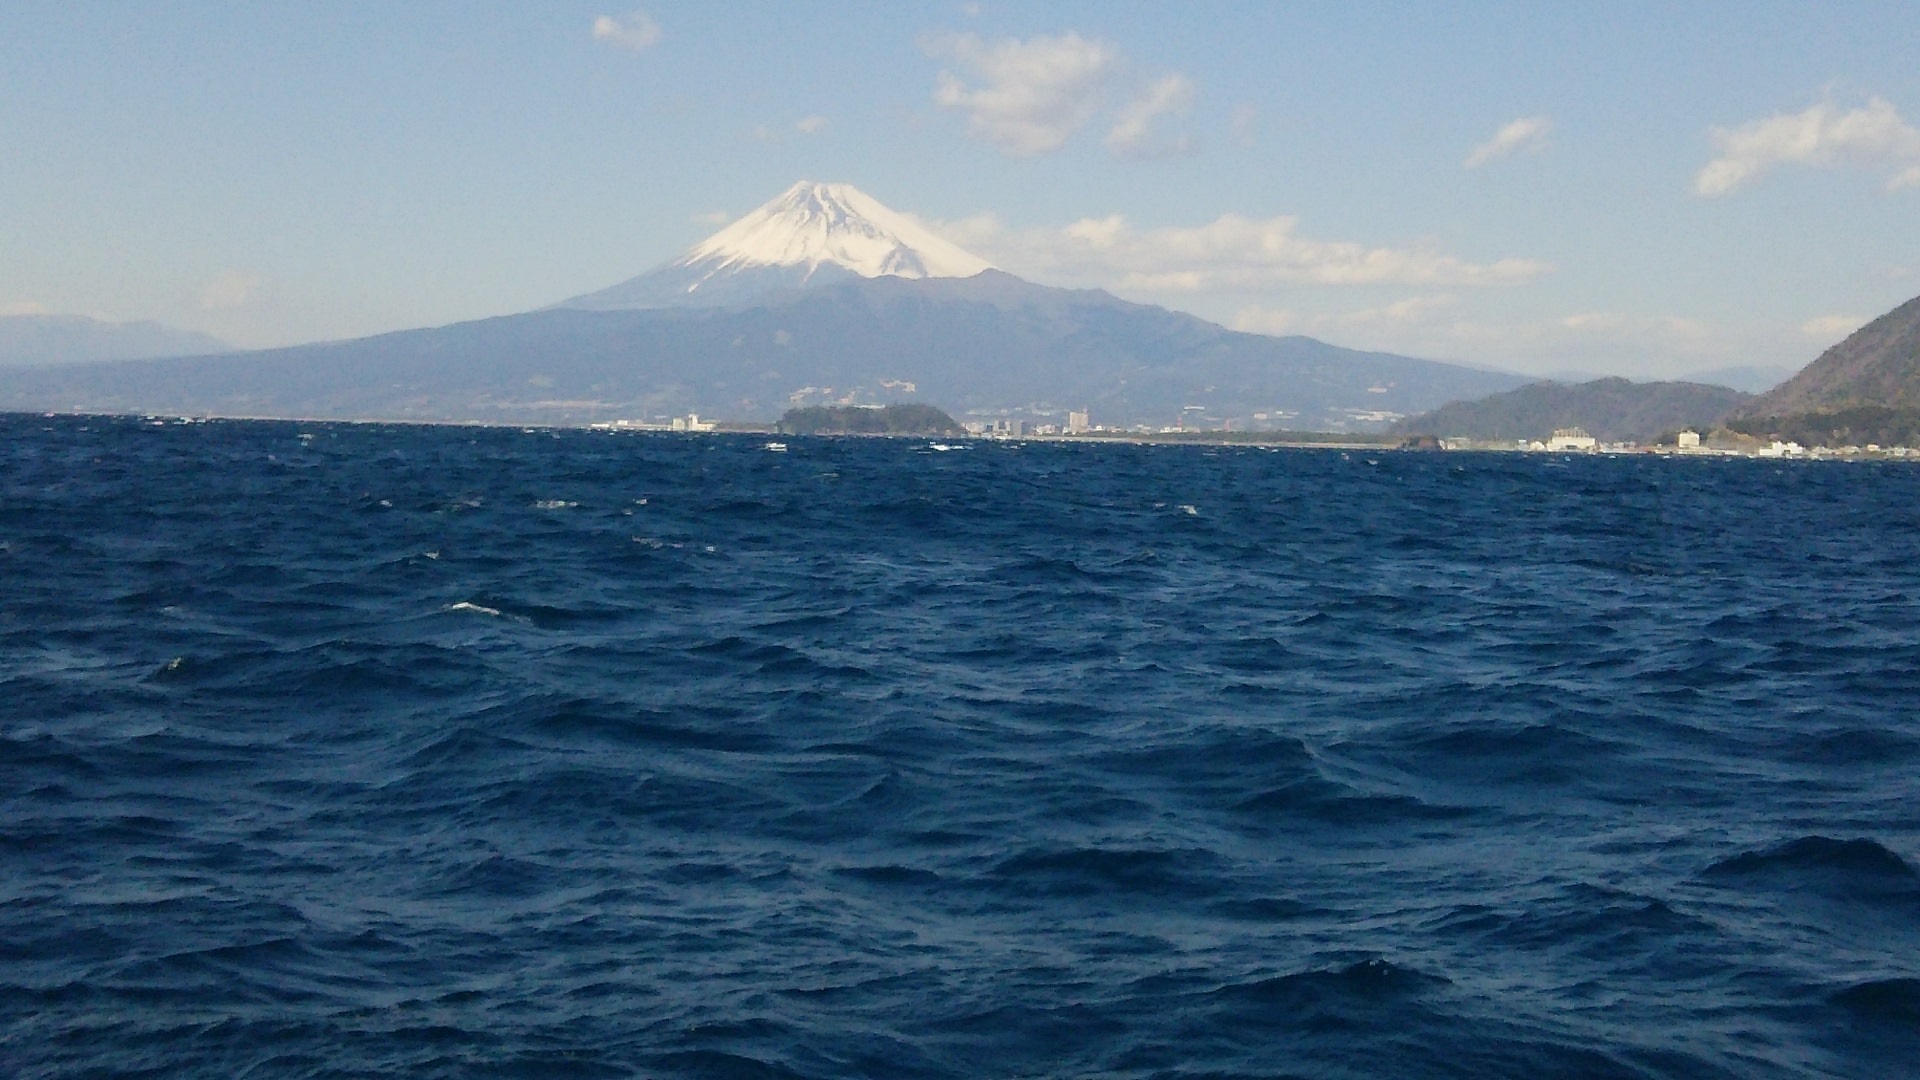 千鳥観光汽船からの富士